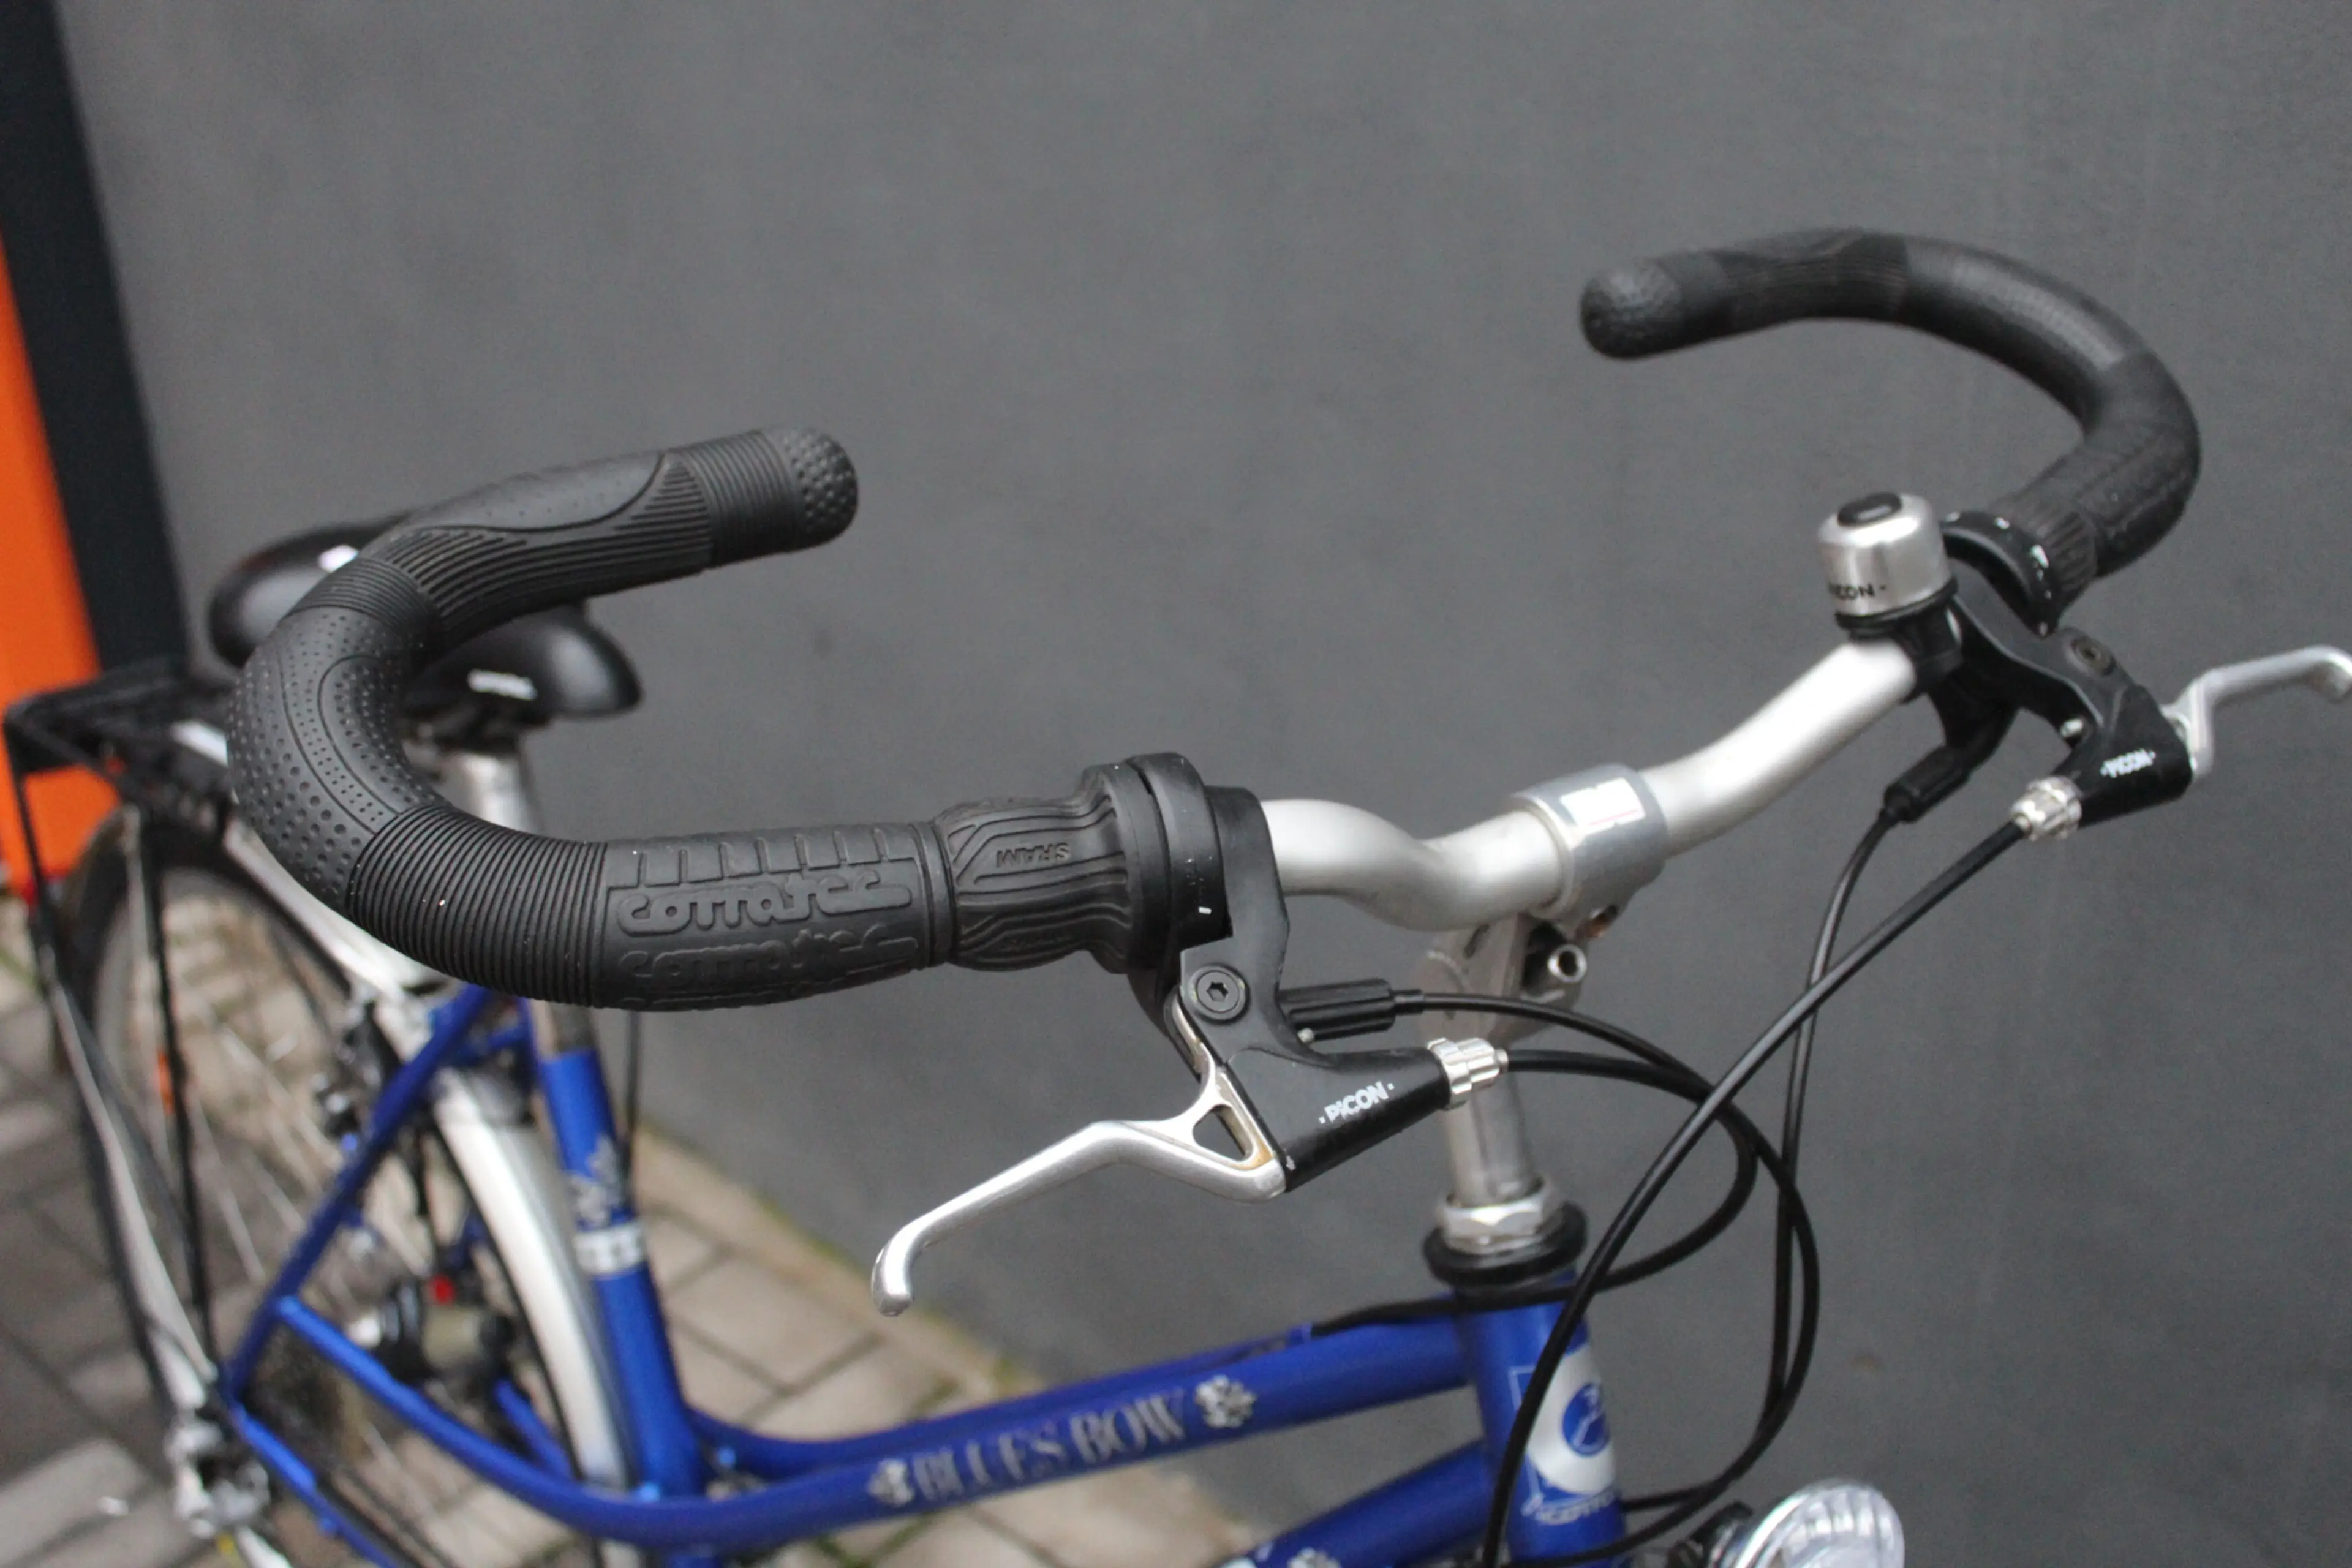 5. Bicicleta Corratec Blues Bow 28"